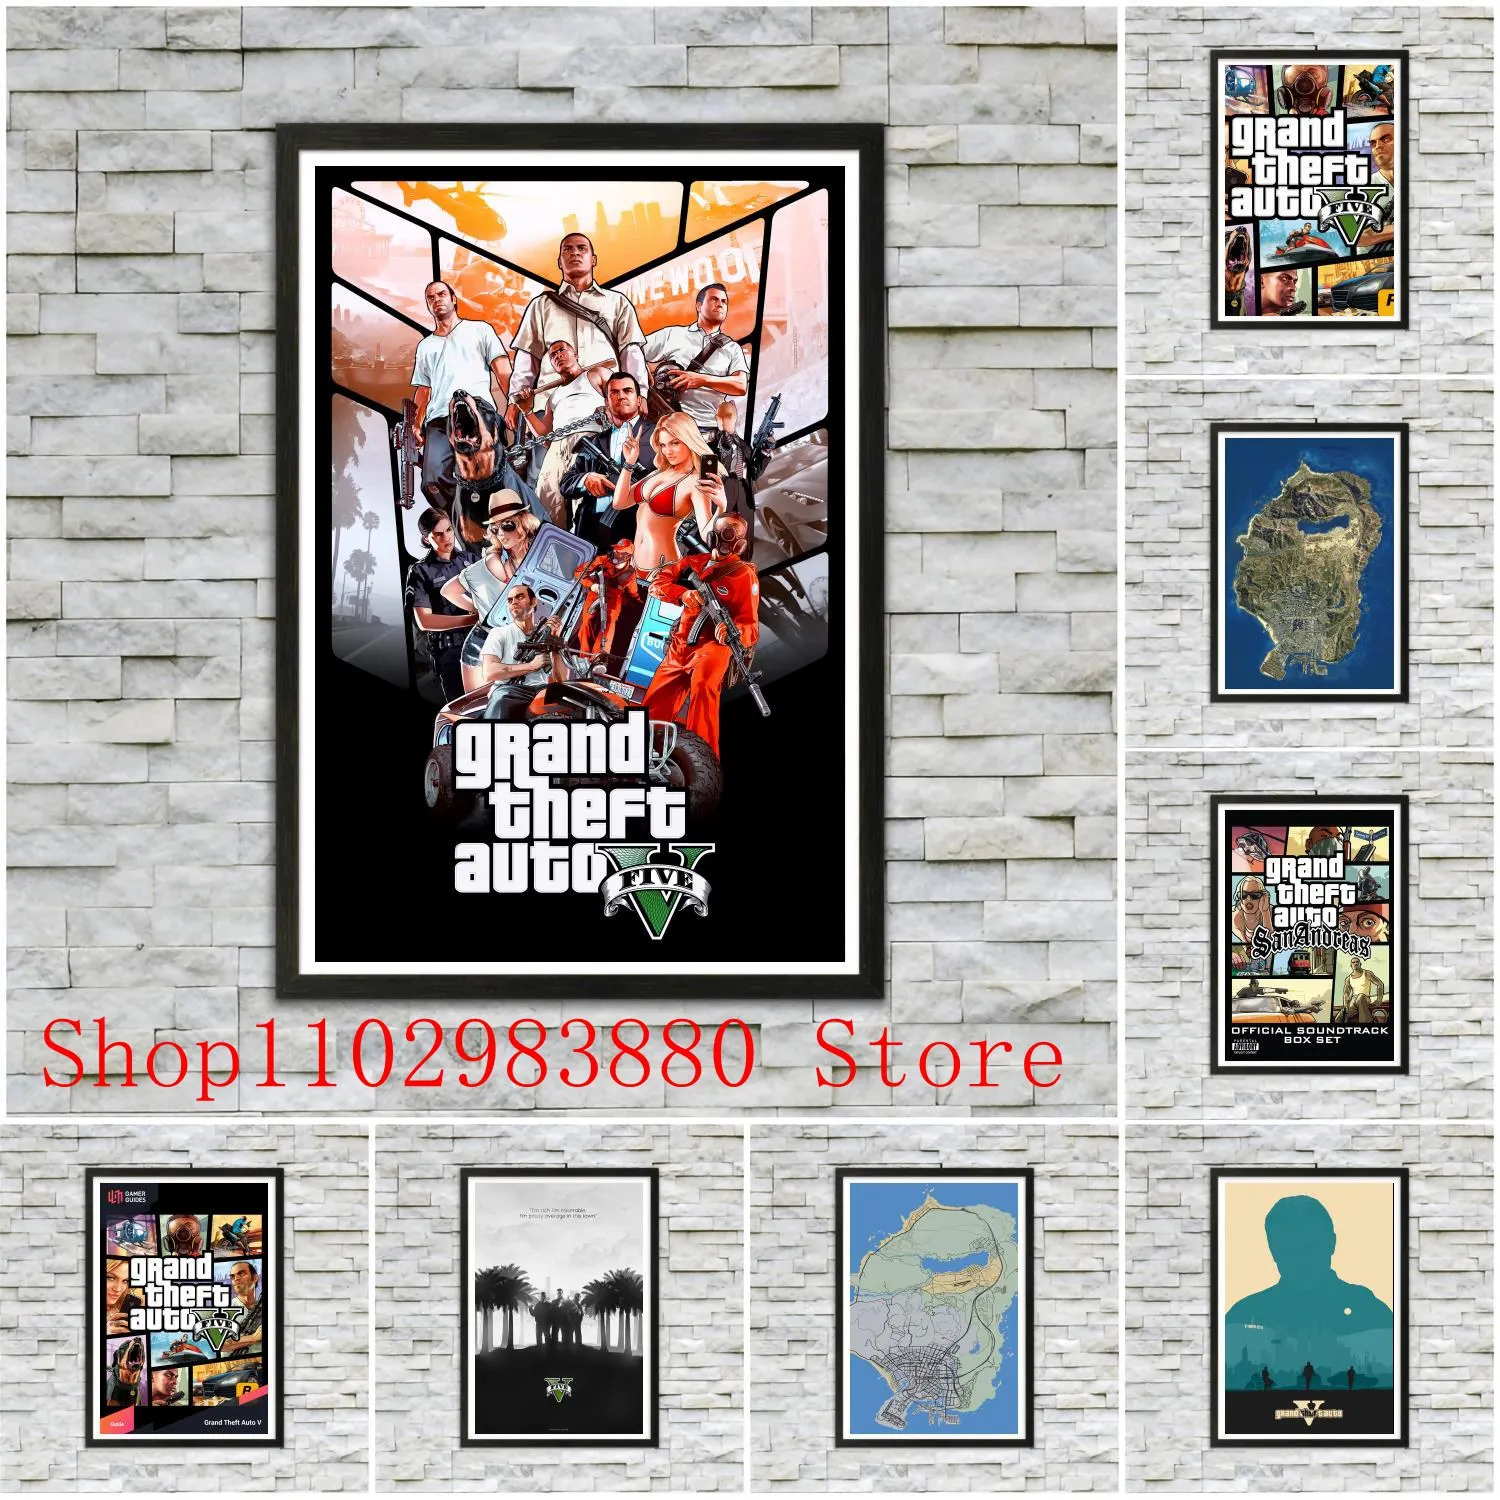 GTA 5 Poster San Andreas Poster Gta 5 Video Game Room Decor Gta Poster  Poster Room Decor 